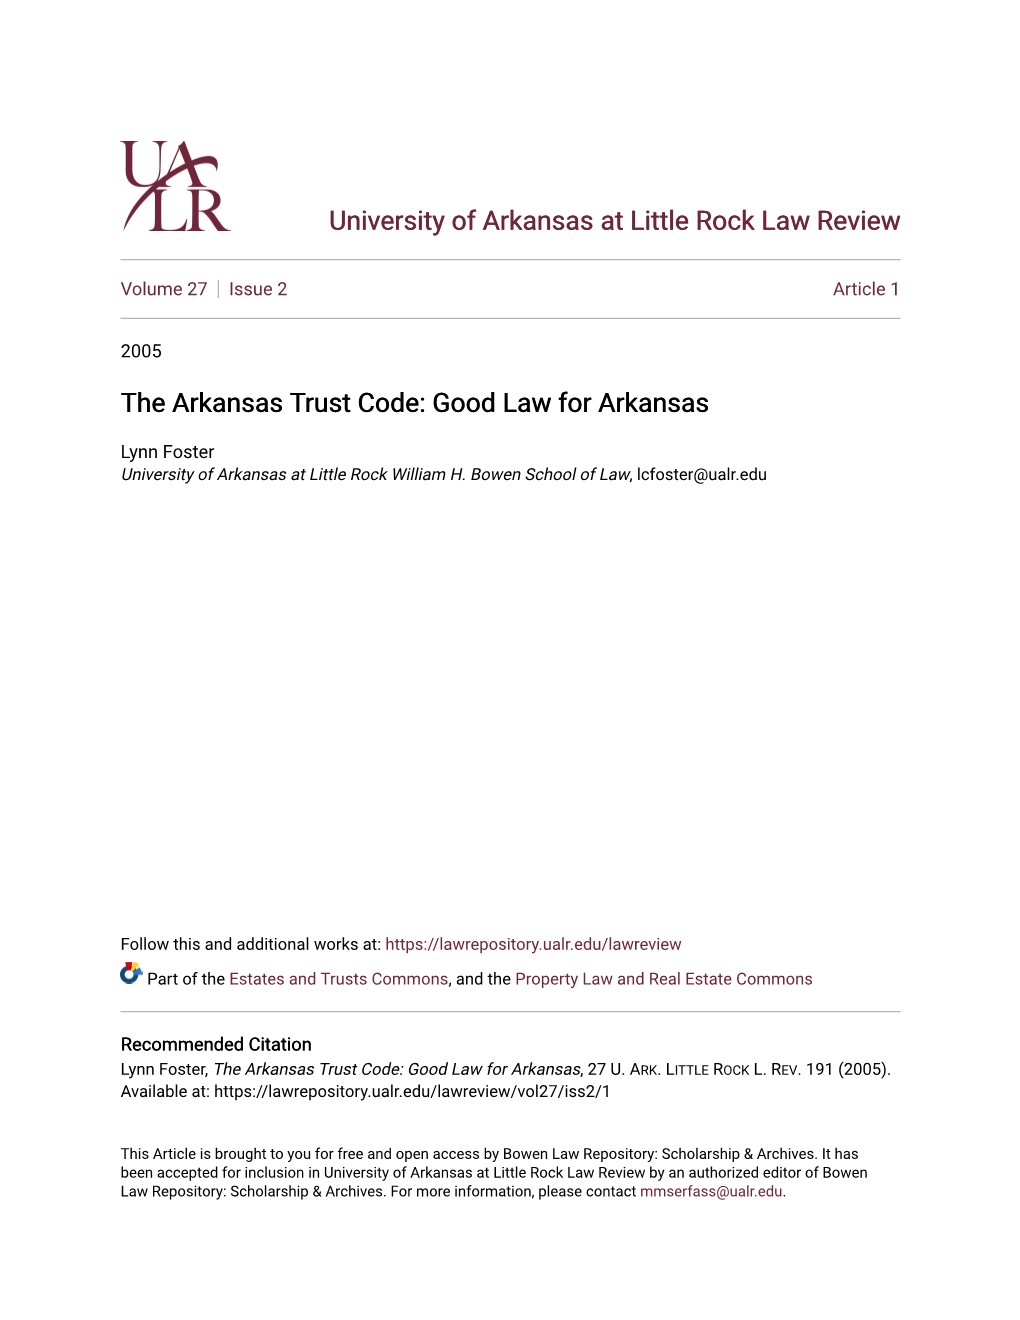 The Arkansas Trust Code: Good Law for Arkansas